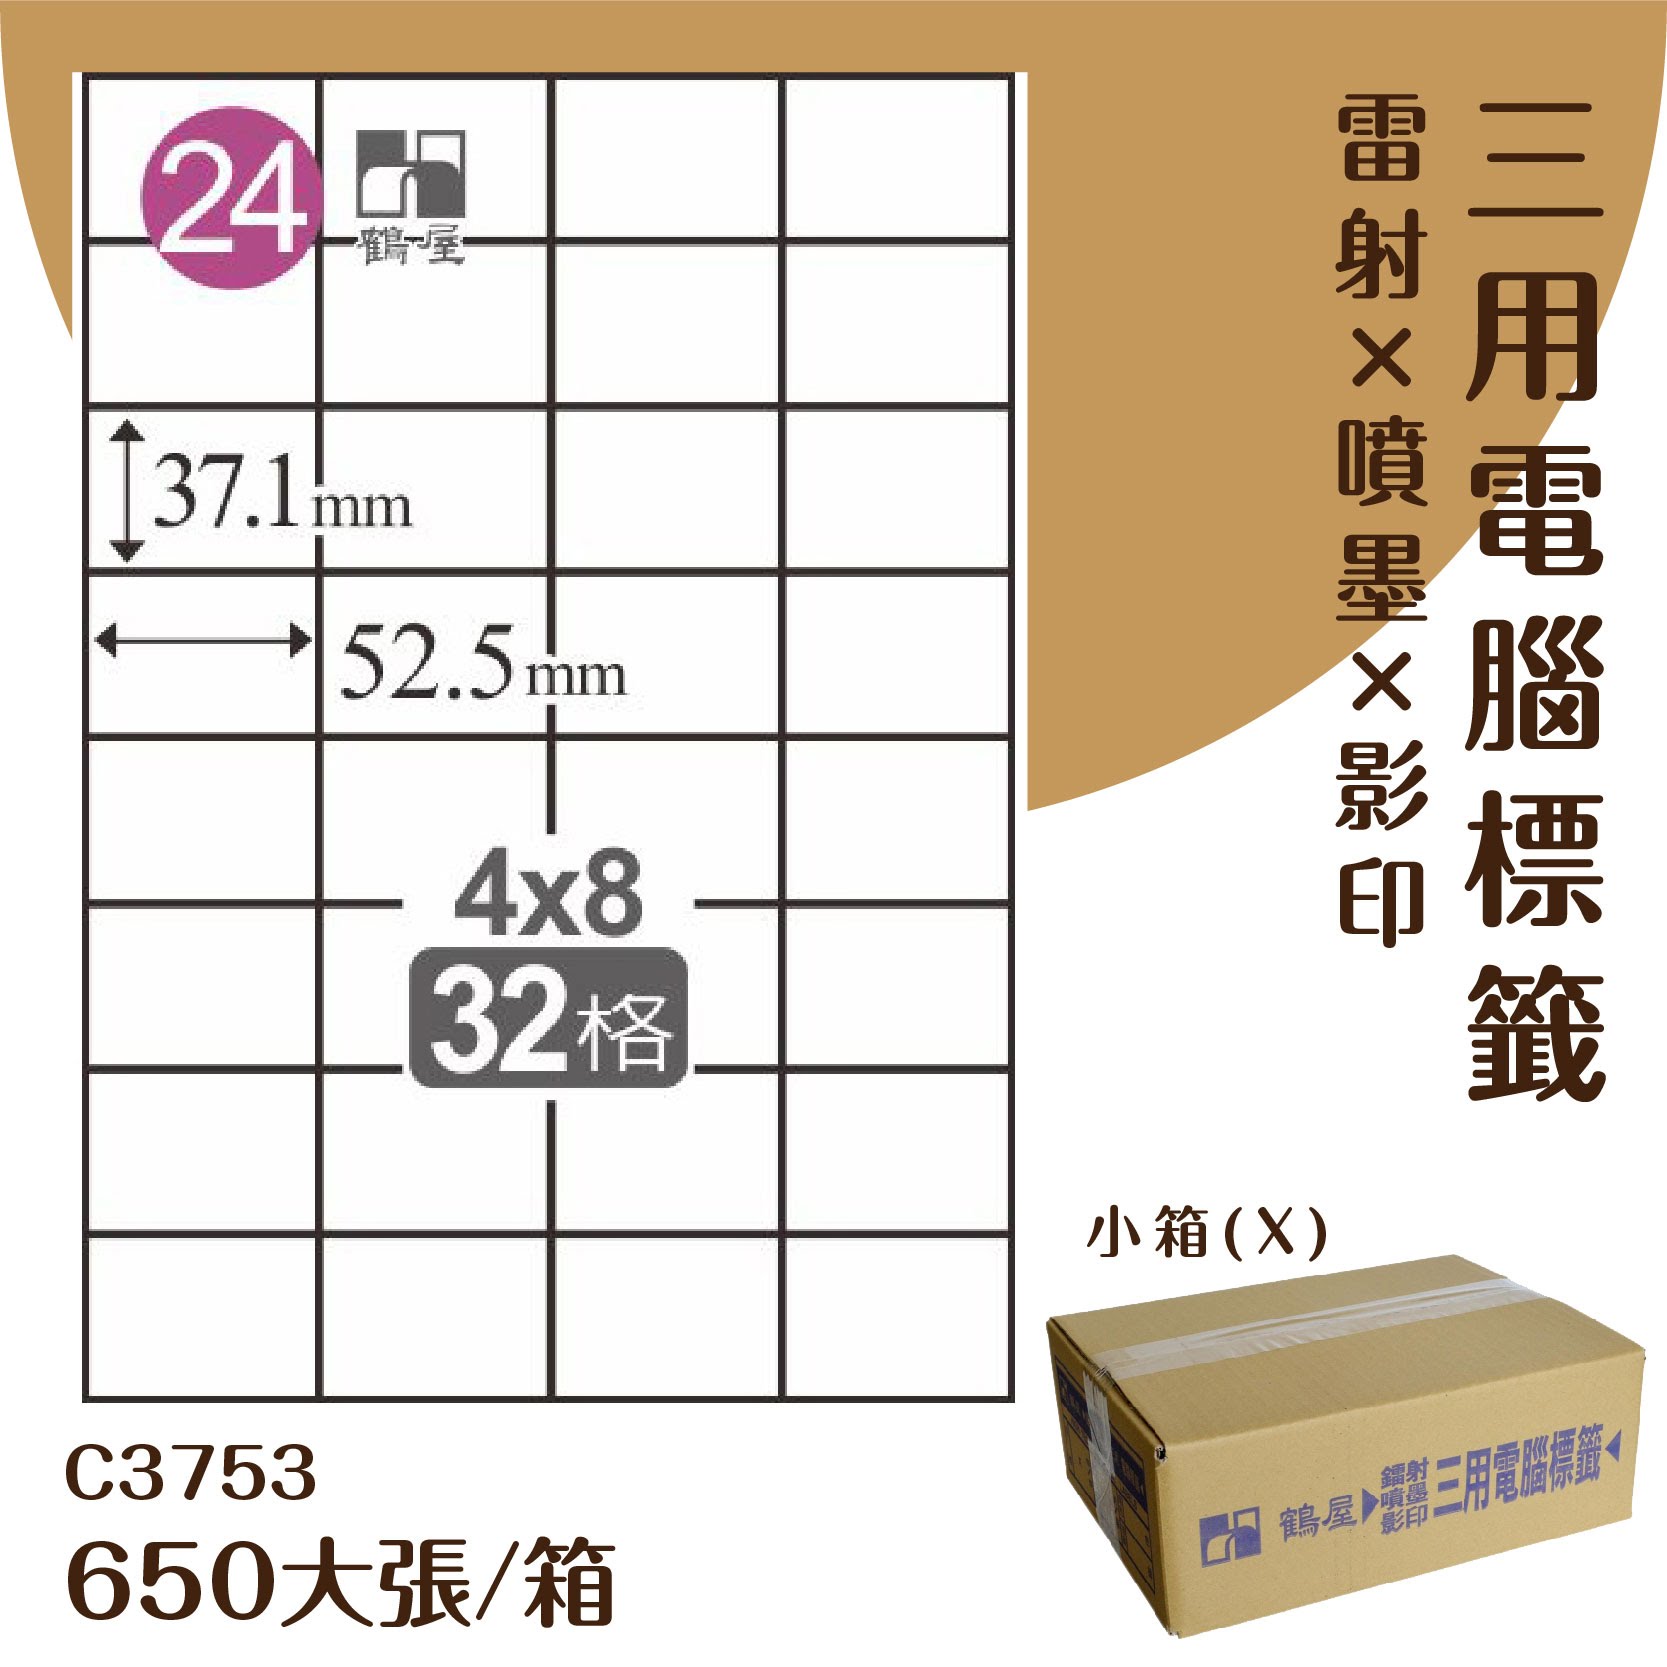 【優質好物】鶴屋 電腦標籤紙-白色 C3753 32格 650大張/小箱 (自黏貼紙/三用標籤/影印&雷射&噴墨)